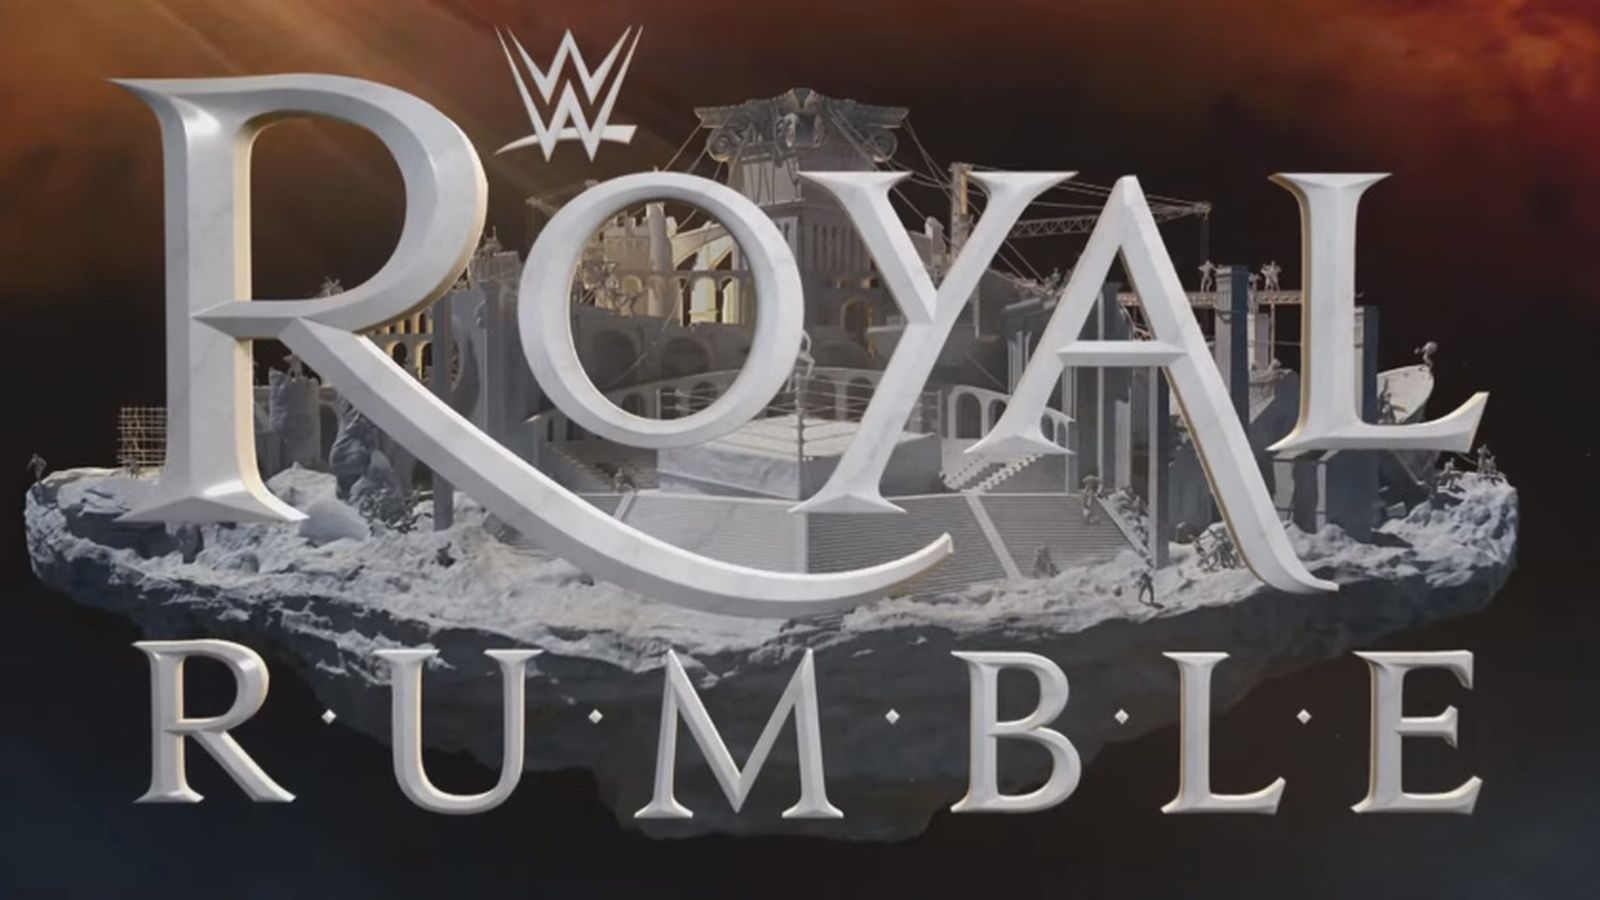 Voir le PPV Royal Rumble en direct live : Résultat combat Main Event et vidéos de la WWE